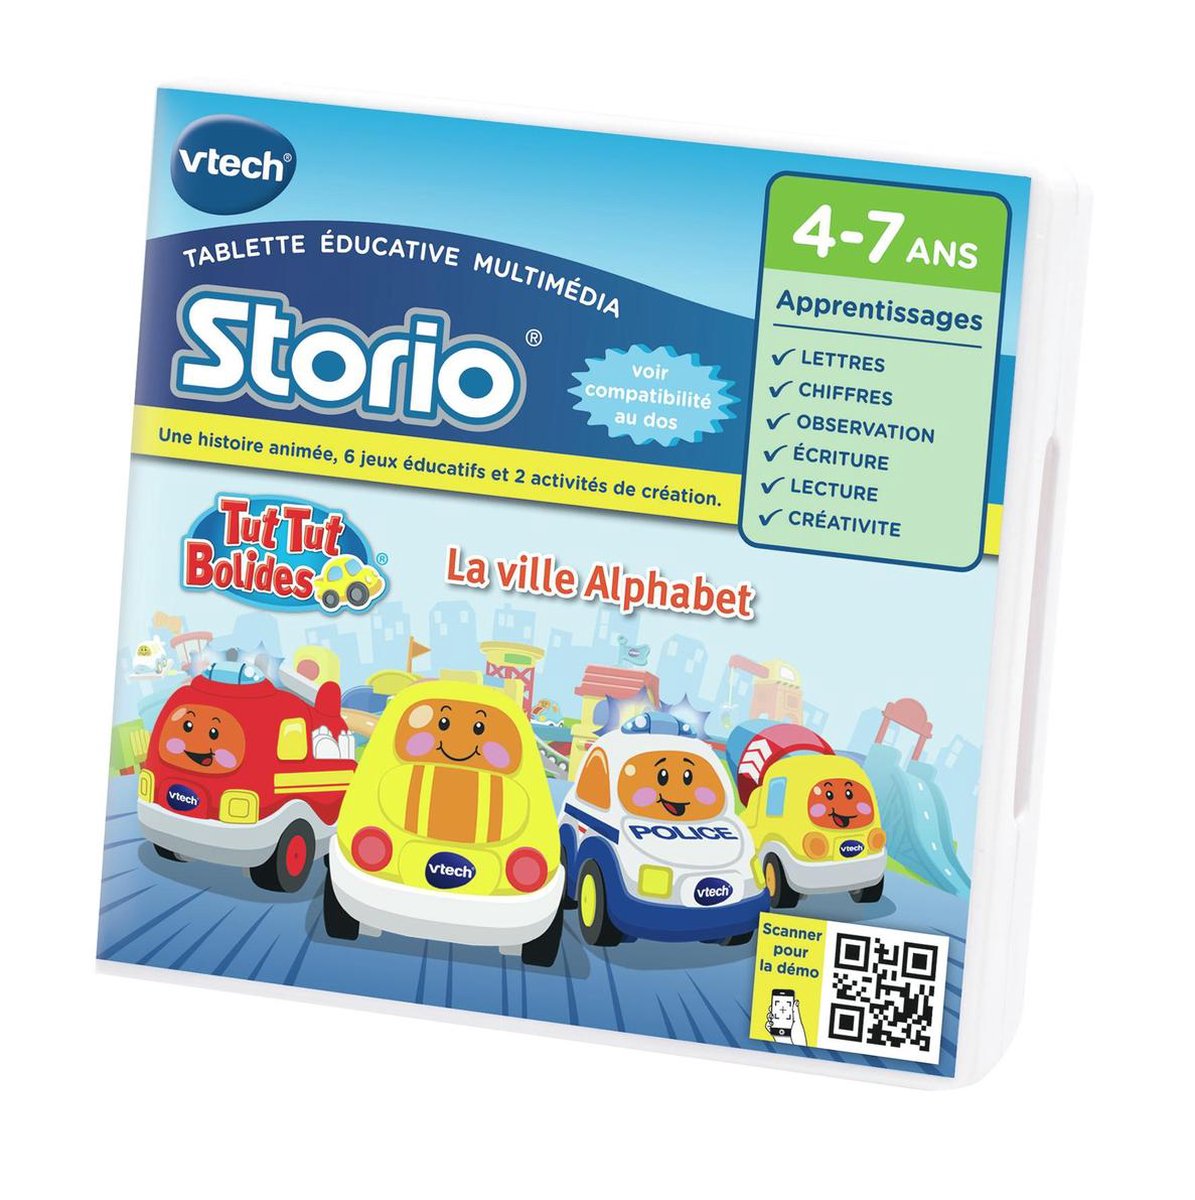 Tablette éducative multimédia Storio 2 d'occasion VTECH - Dès 6